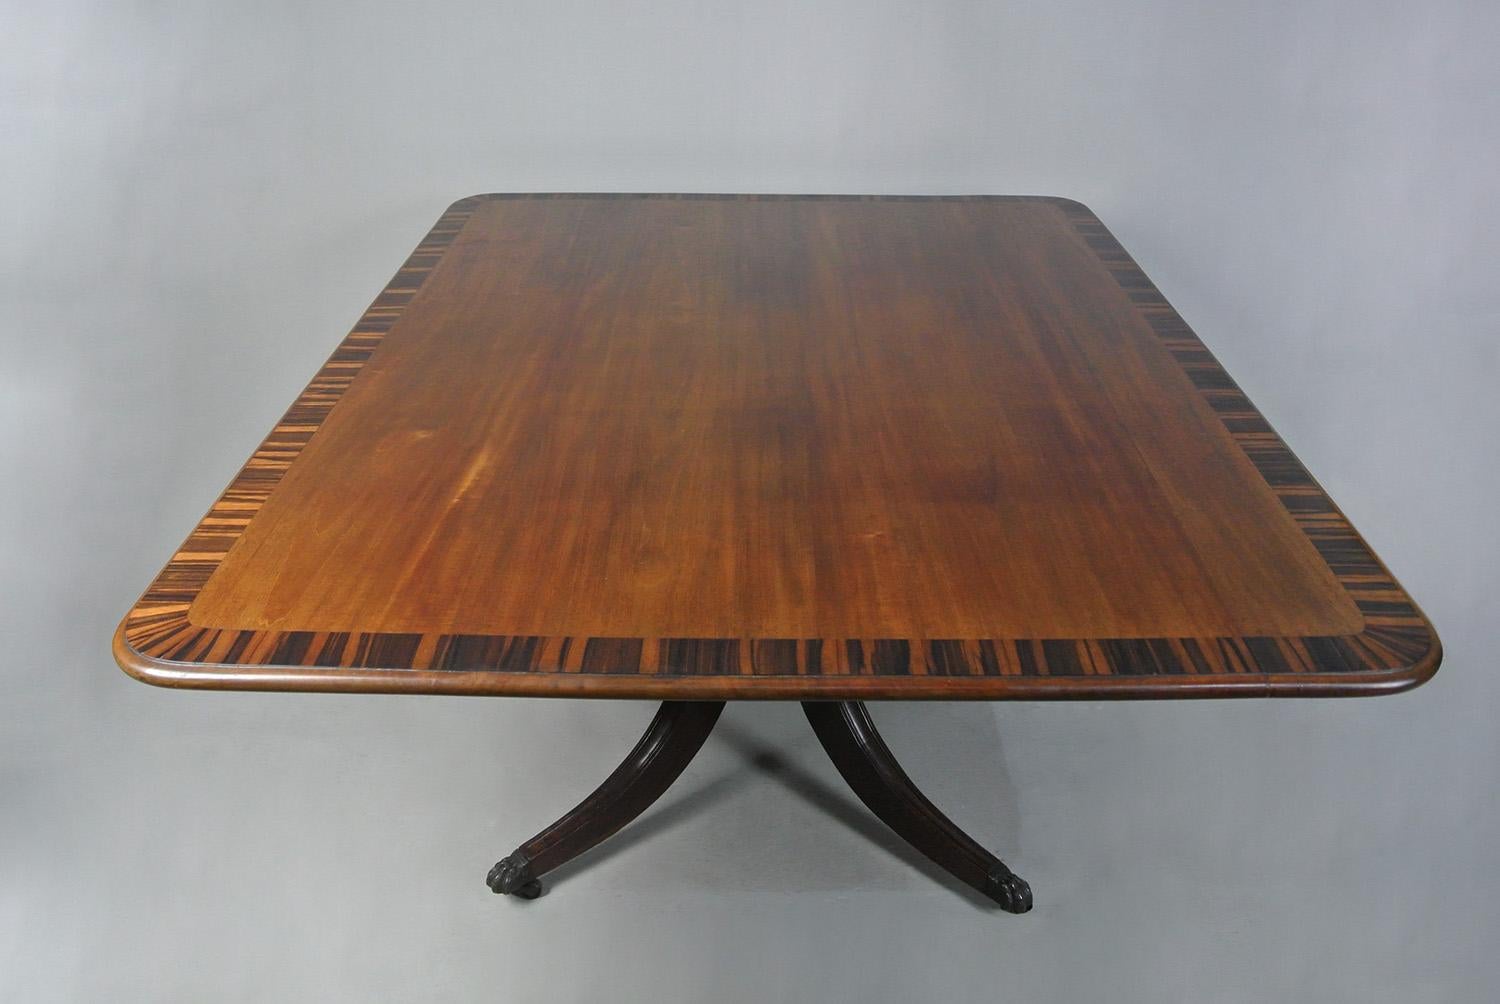 Regency Tilt Top Supper Table with Coromandel Crossbanding c. 1820 In Good Condition For Sale In Heathfield, GB